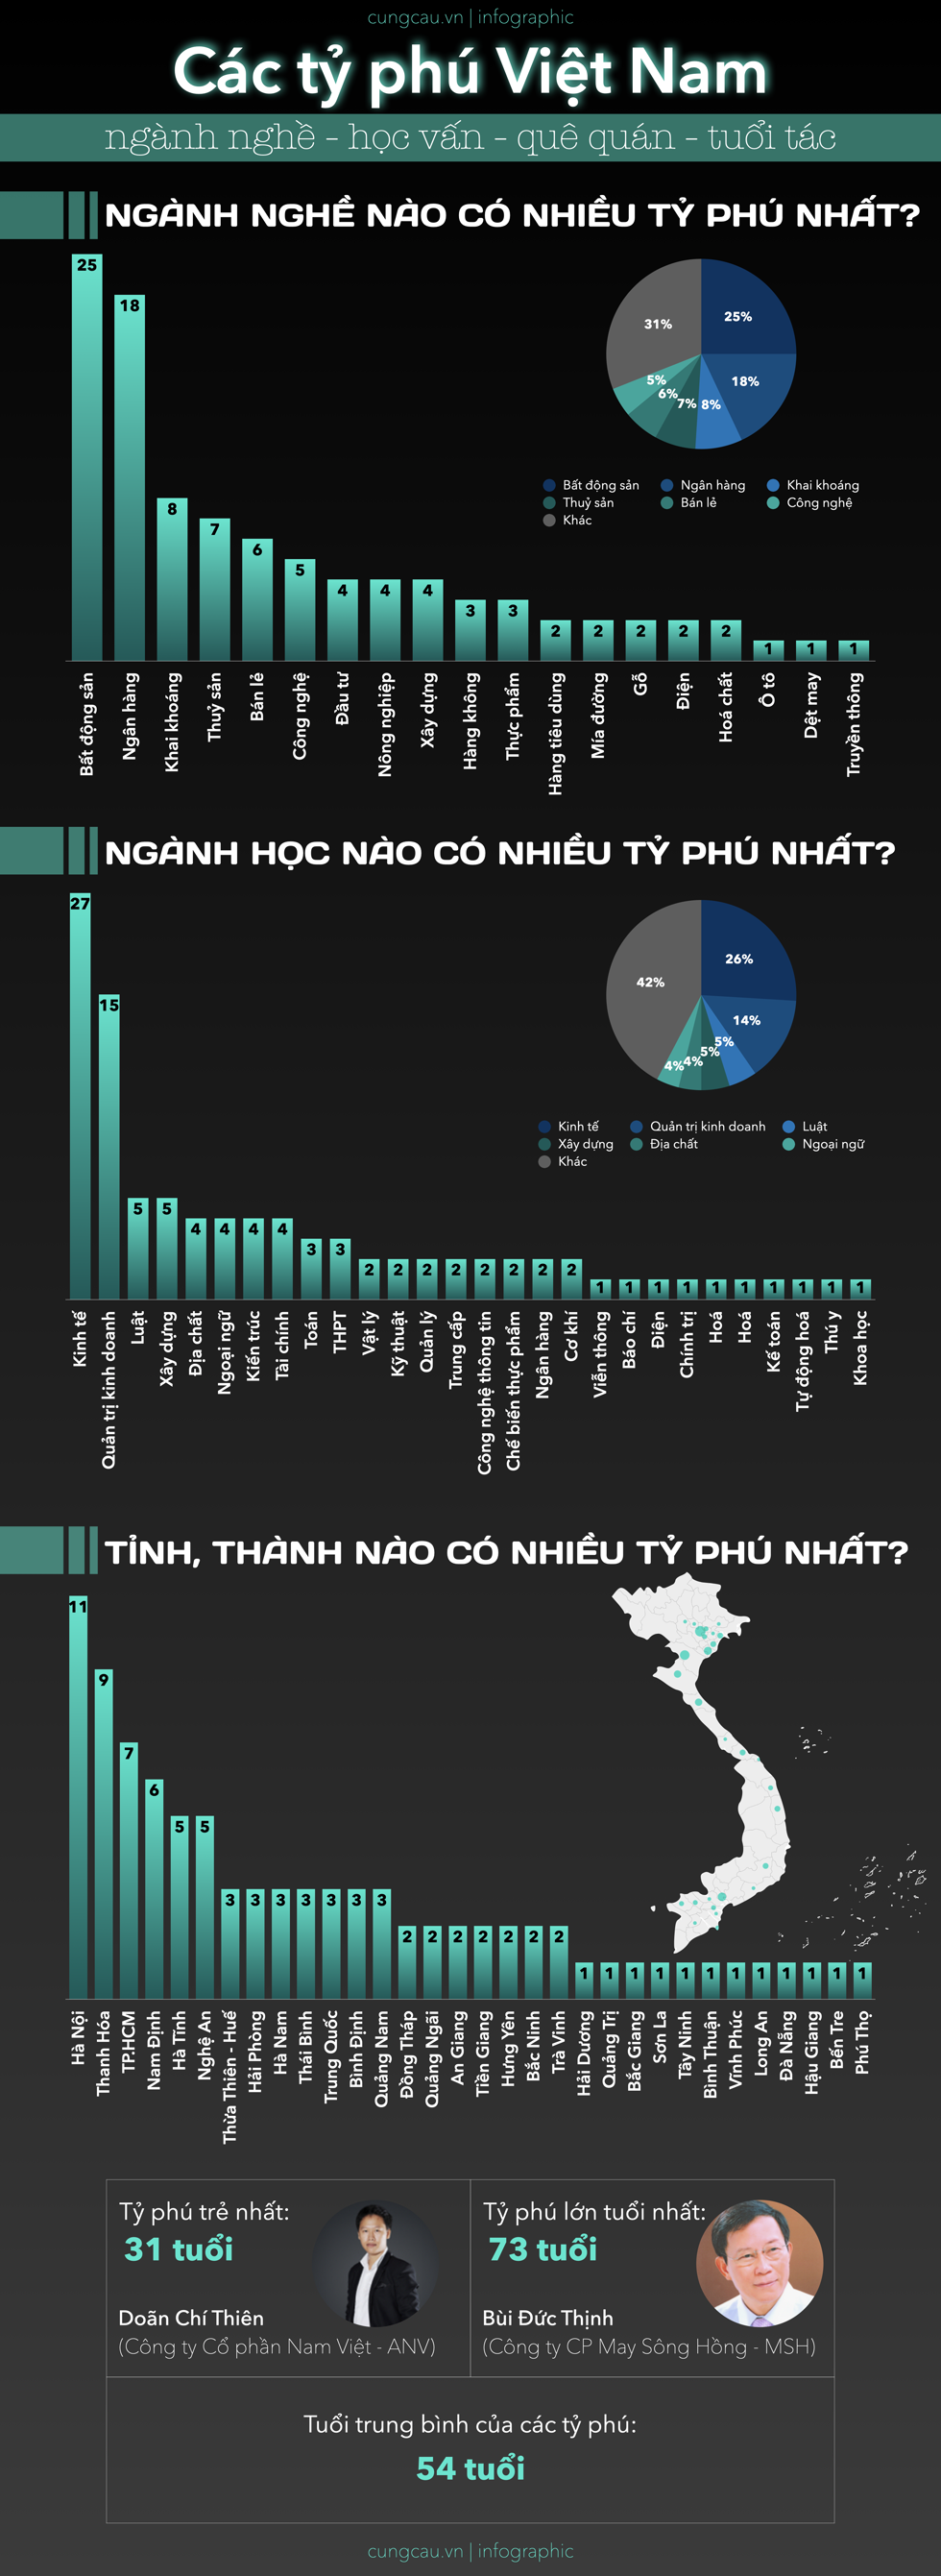 Làm gì, học ngành nào, ở đâu dễ thành tỷ phú nhất Việt Nam?